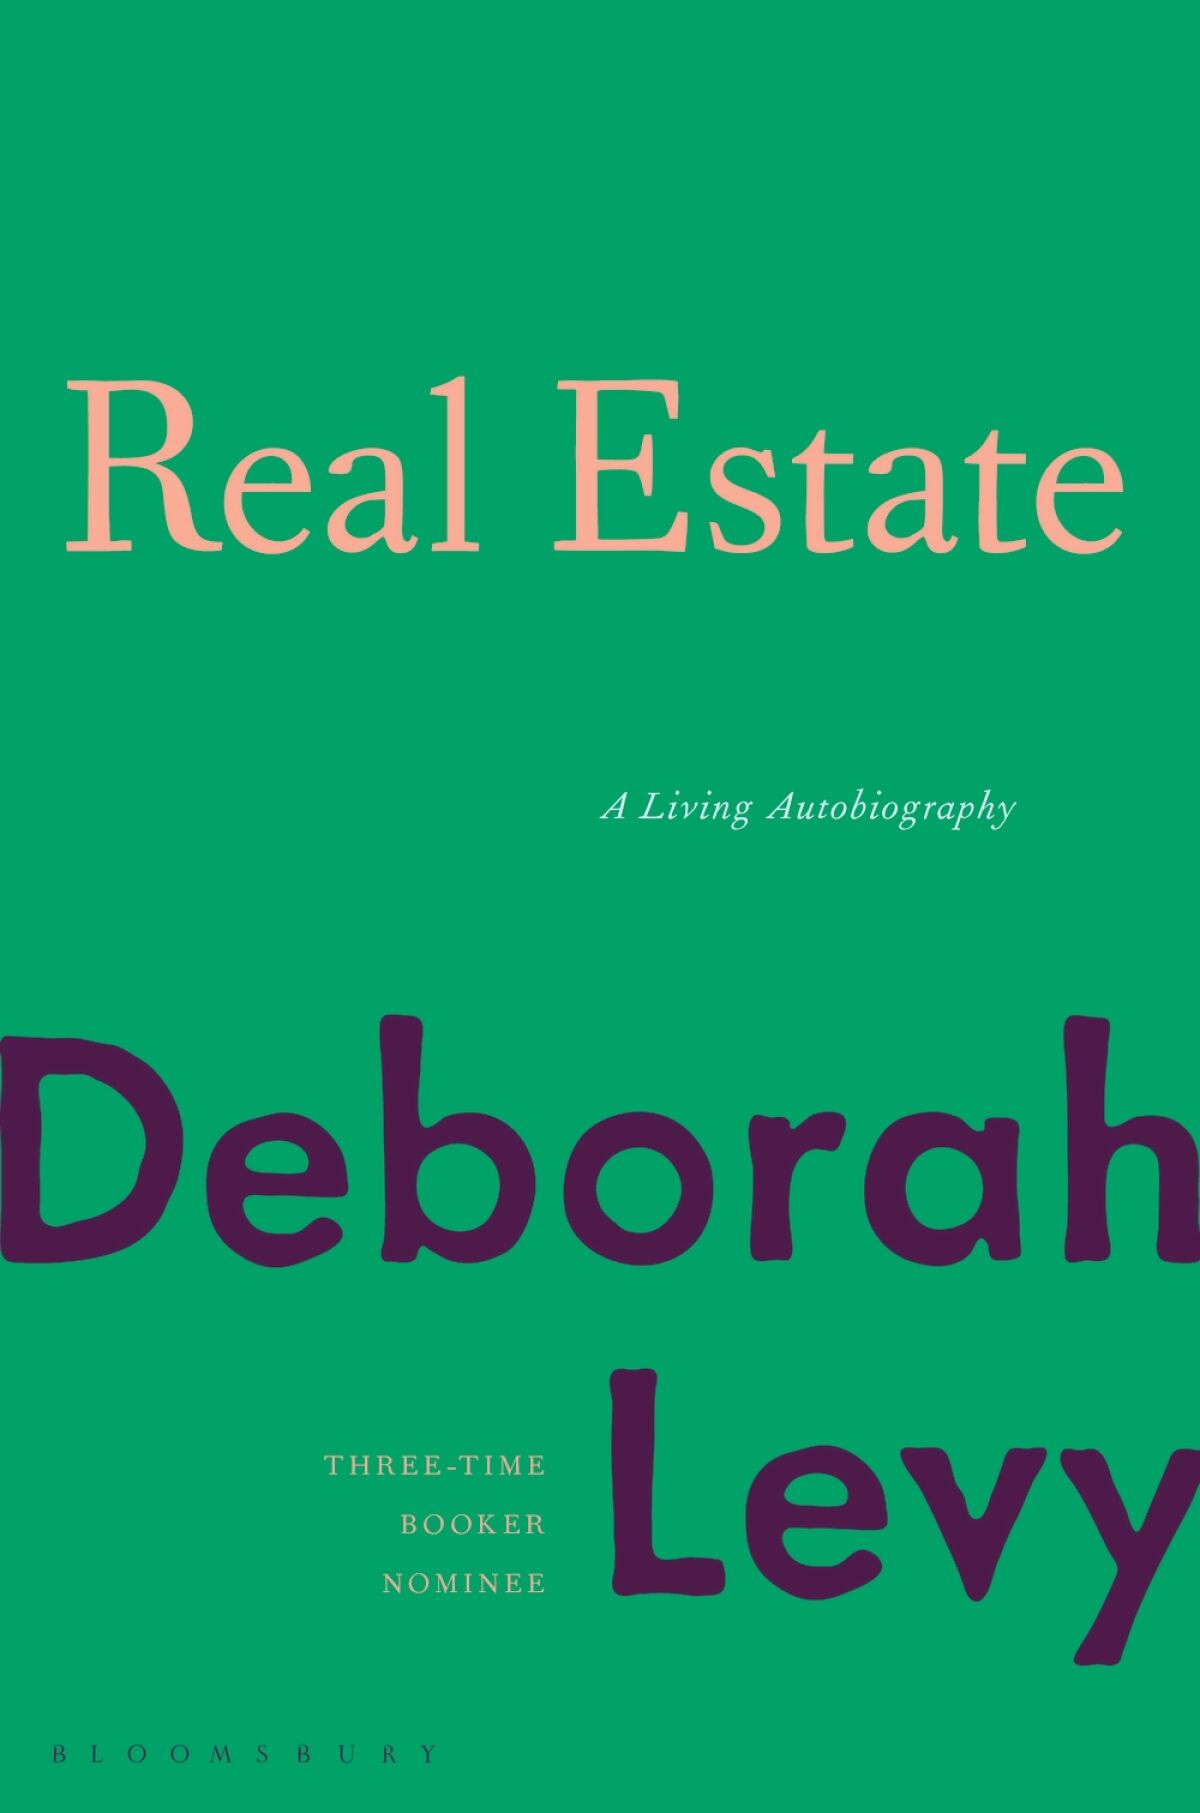 "Real Estate," by Deborah Levy